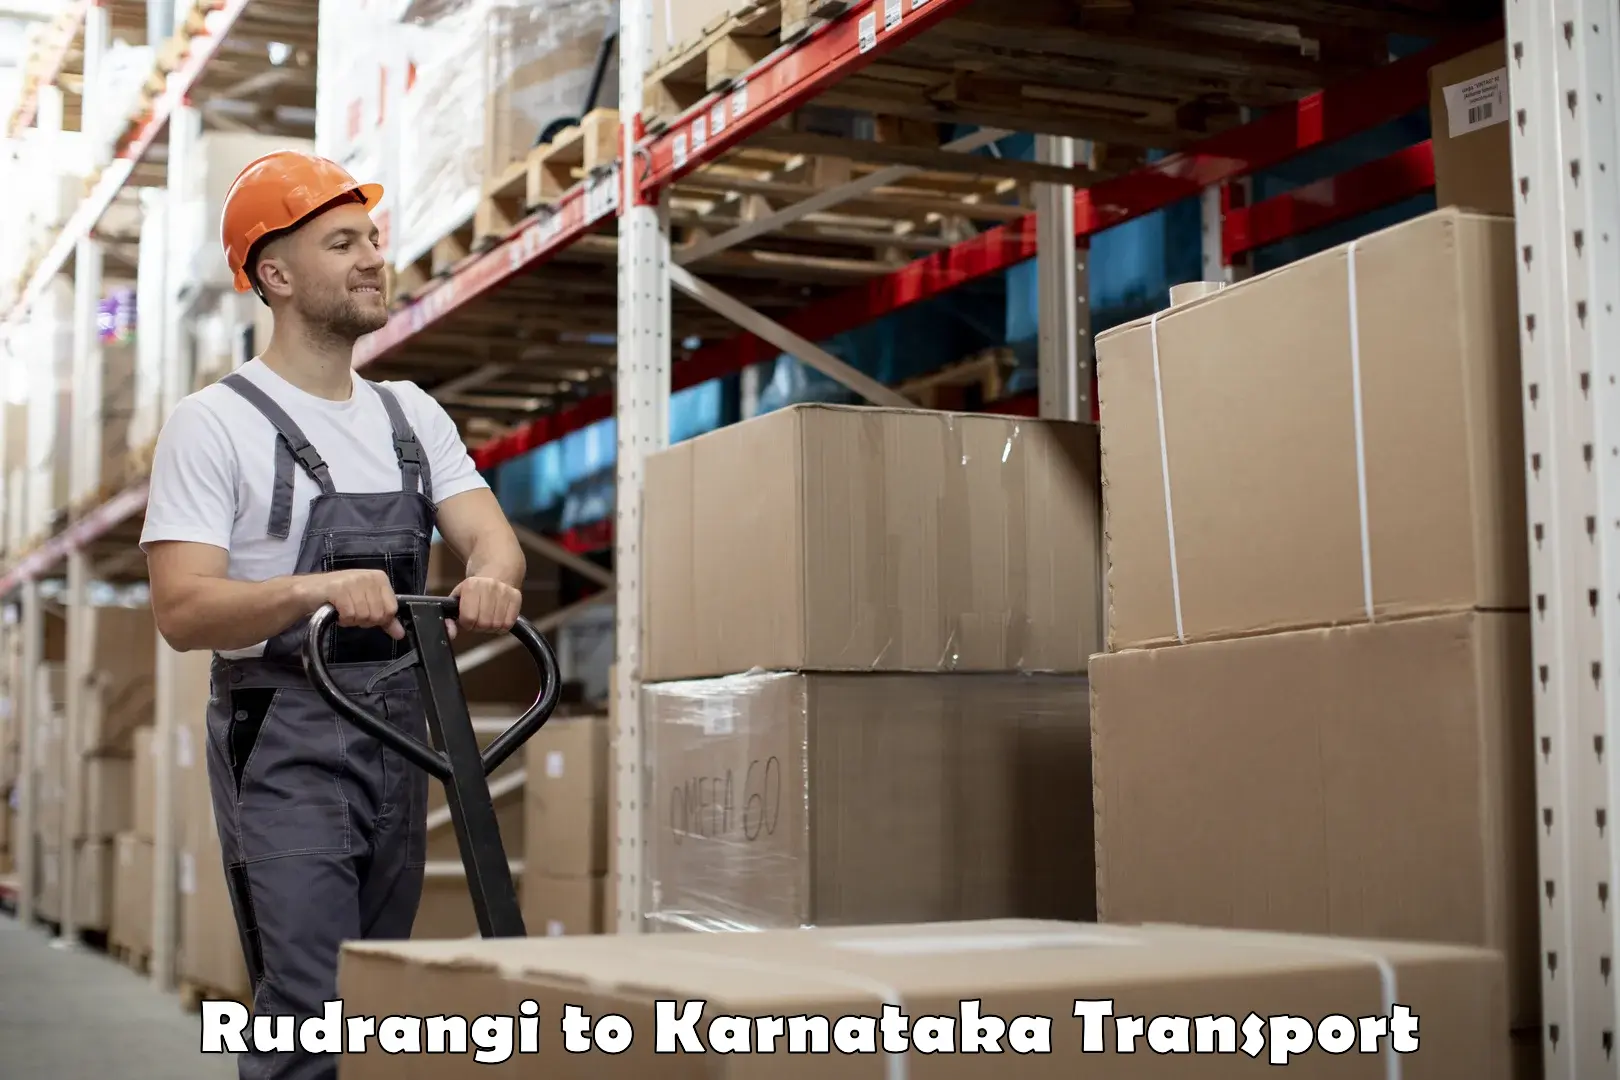 Furniture transport service Rudrangi to Karnataka